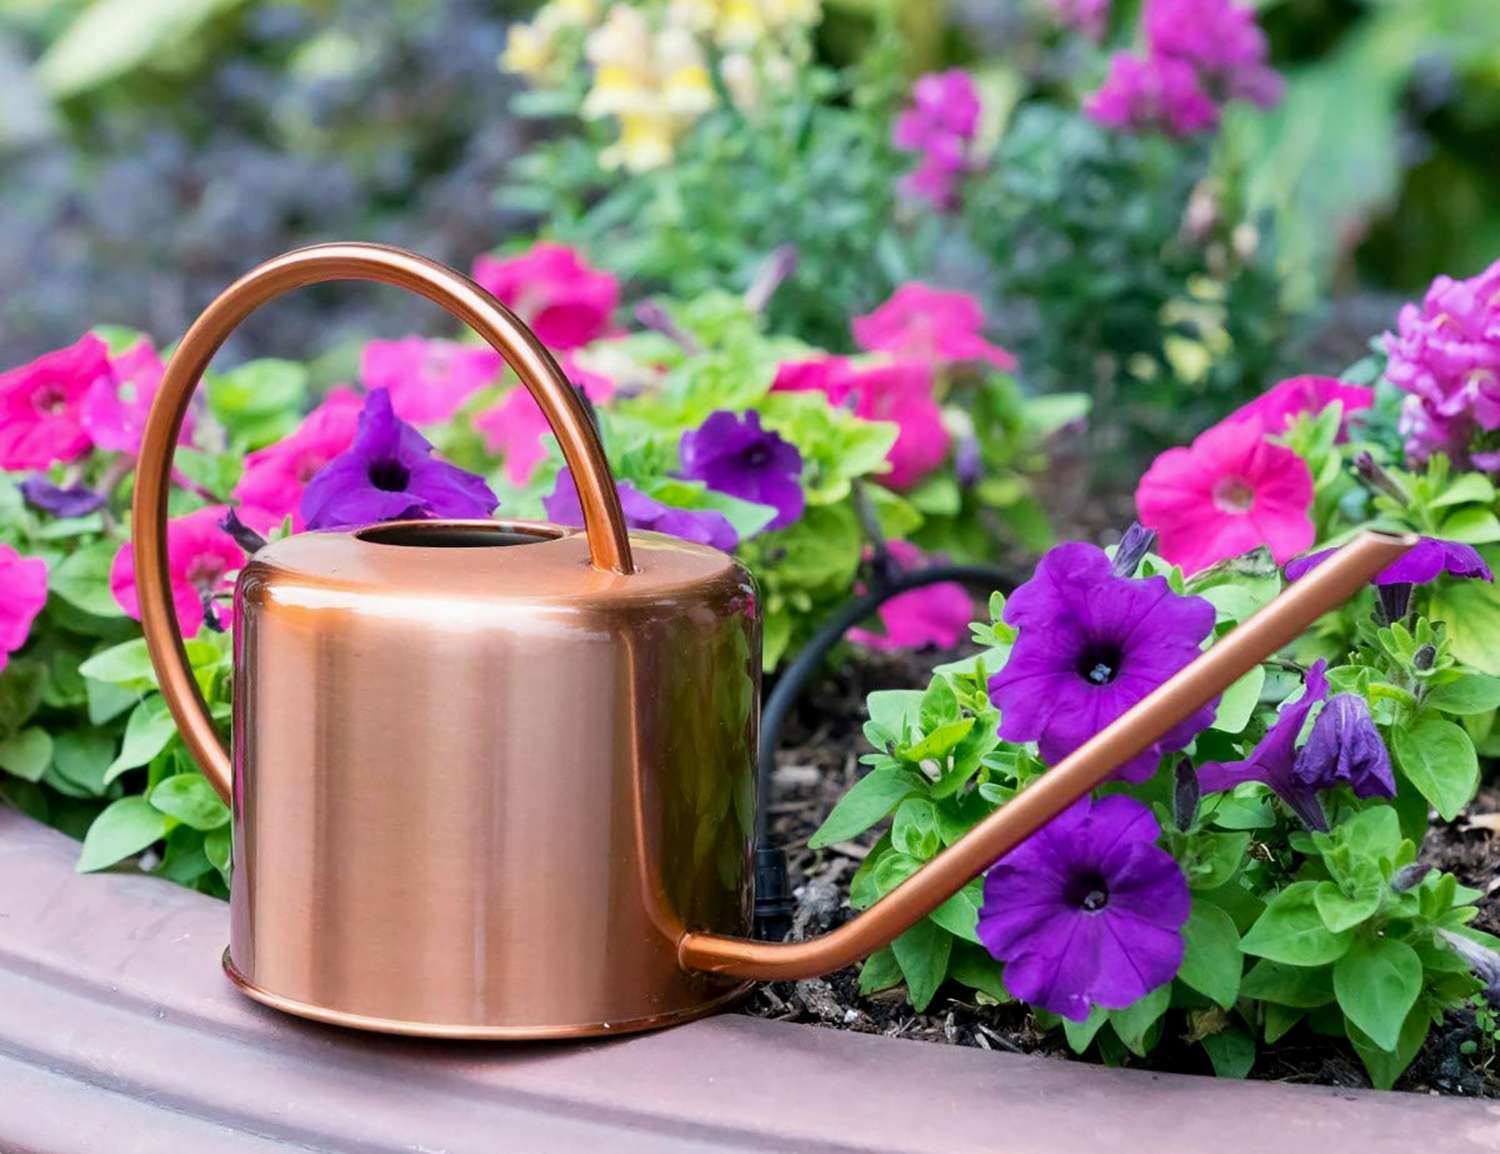 Plastic Watering Can Long Spout Indoor Outdoor Garden Flowers Plants Water Pot